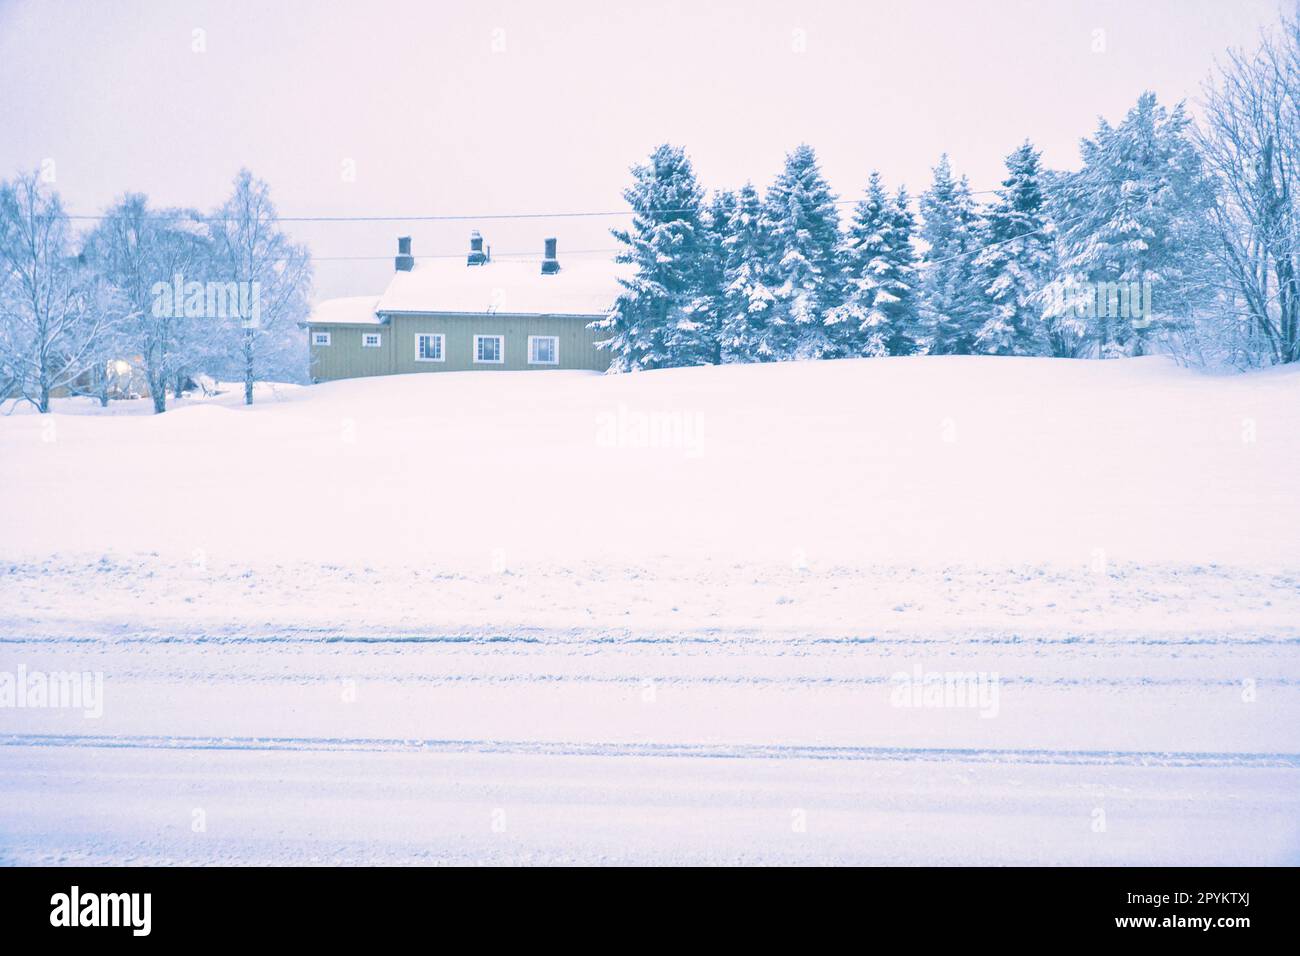 Paysage d'hiver en Scandinavie. Route enneigée avec des arbres couverts de neige et une maison. Photo de paysage du nord Banque D'Images